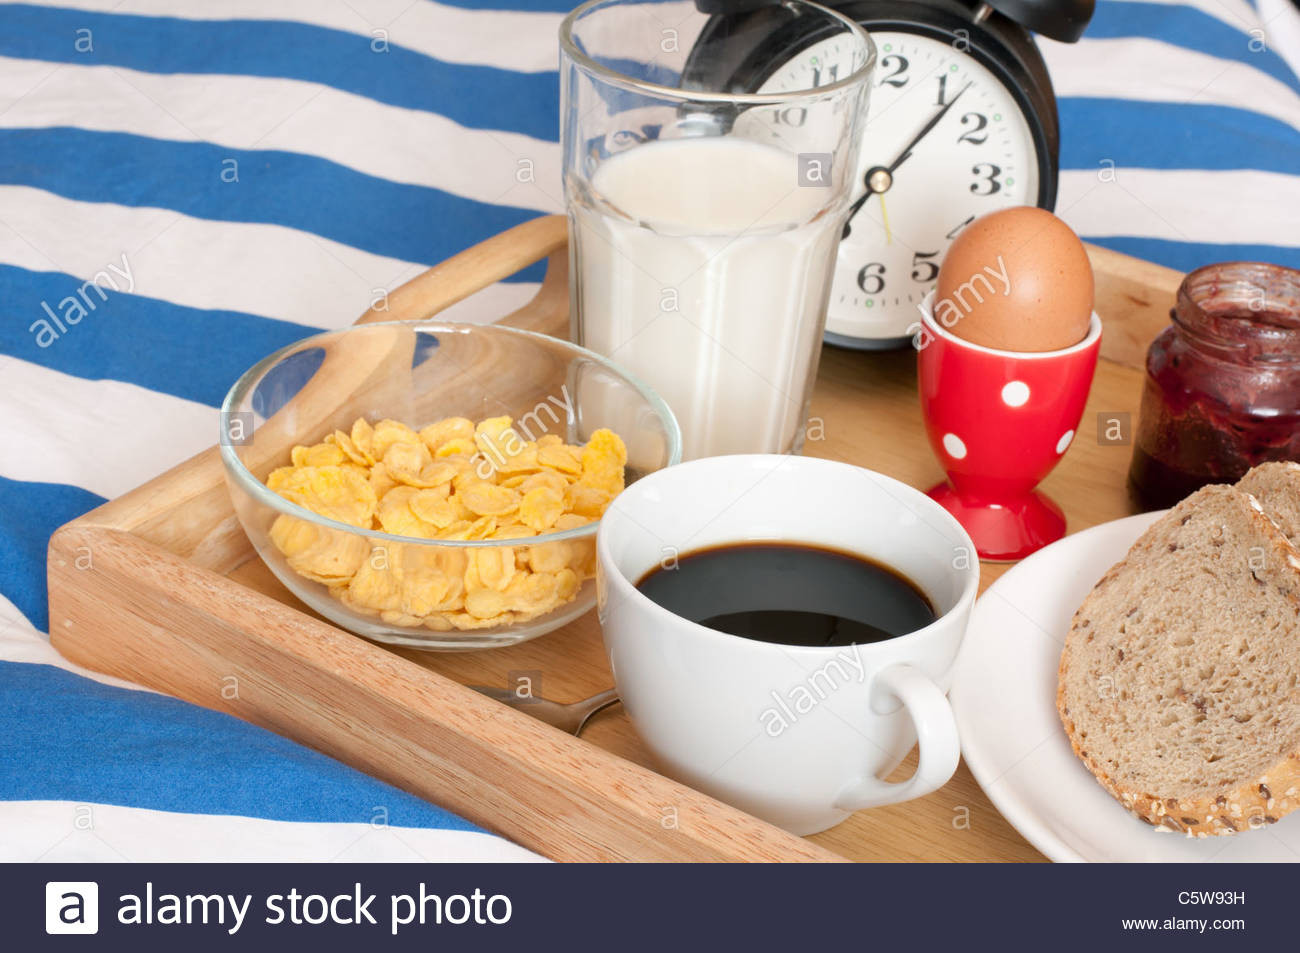 Frühstück Im Bett
 Frühstück im Bett Brot Marmelade Kaffee gekochtes Ei